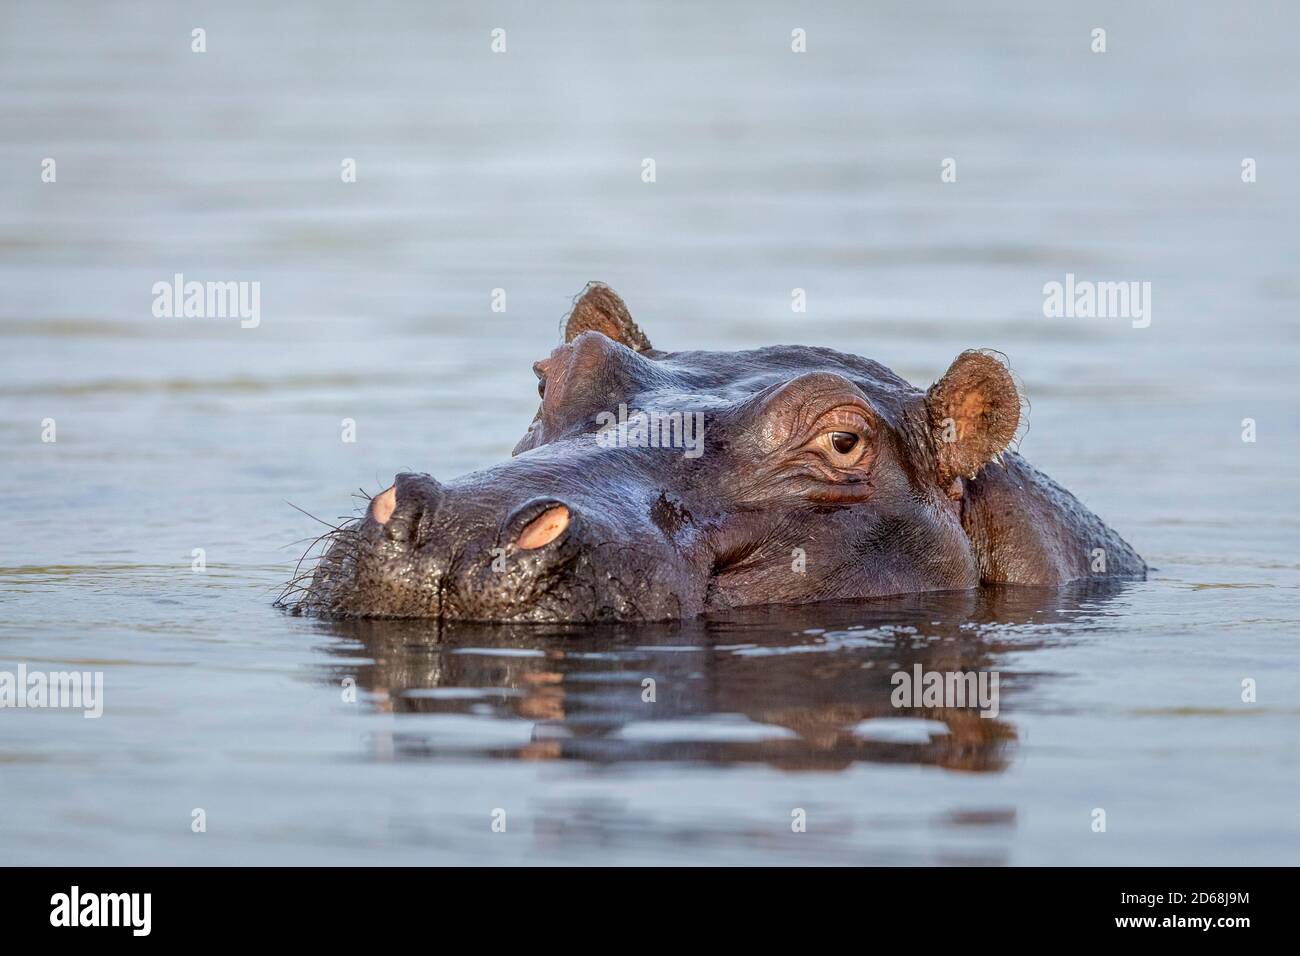 Gros plan sur la tête de l'hippopotame qui dépasse de l'eau Rivière Chobe au Botswana Banque D'Images